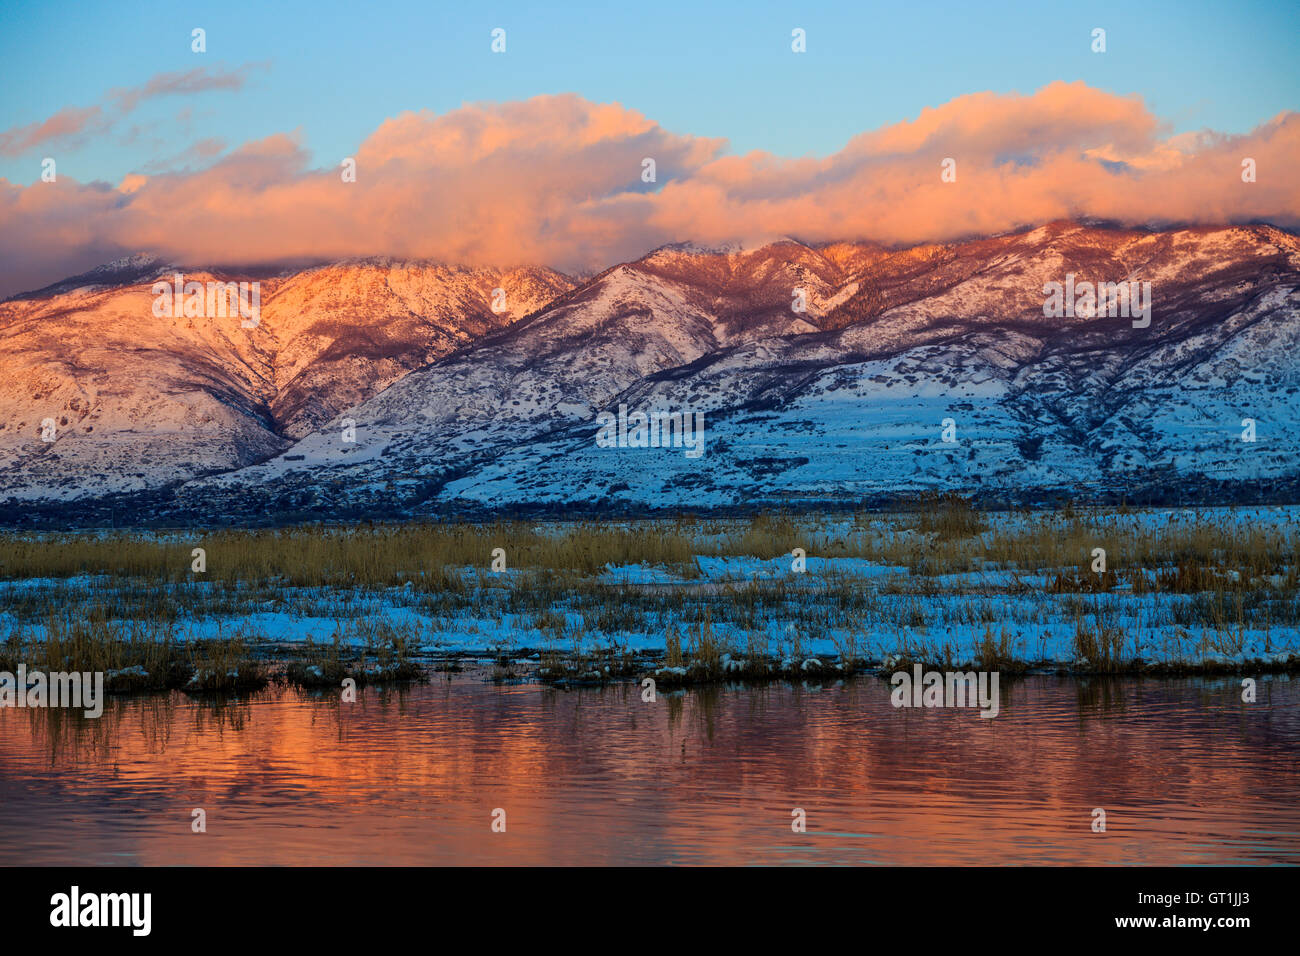 Las Montañas Wasatch reflexionar sobre las aguas abiertas en Farmington Bay Area de Manejo de Aves Acuáticas de Farmington, Utah, EE.UU. Foto de stock